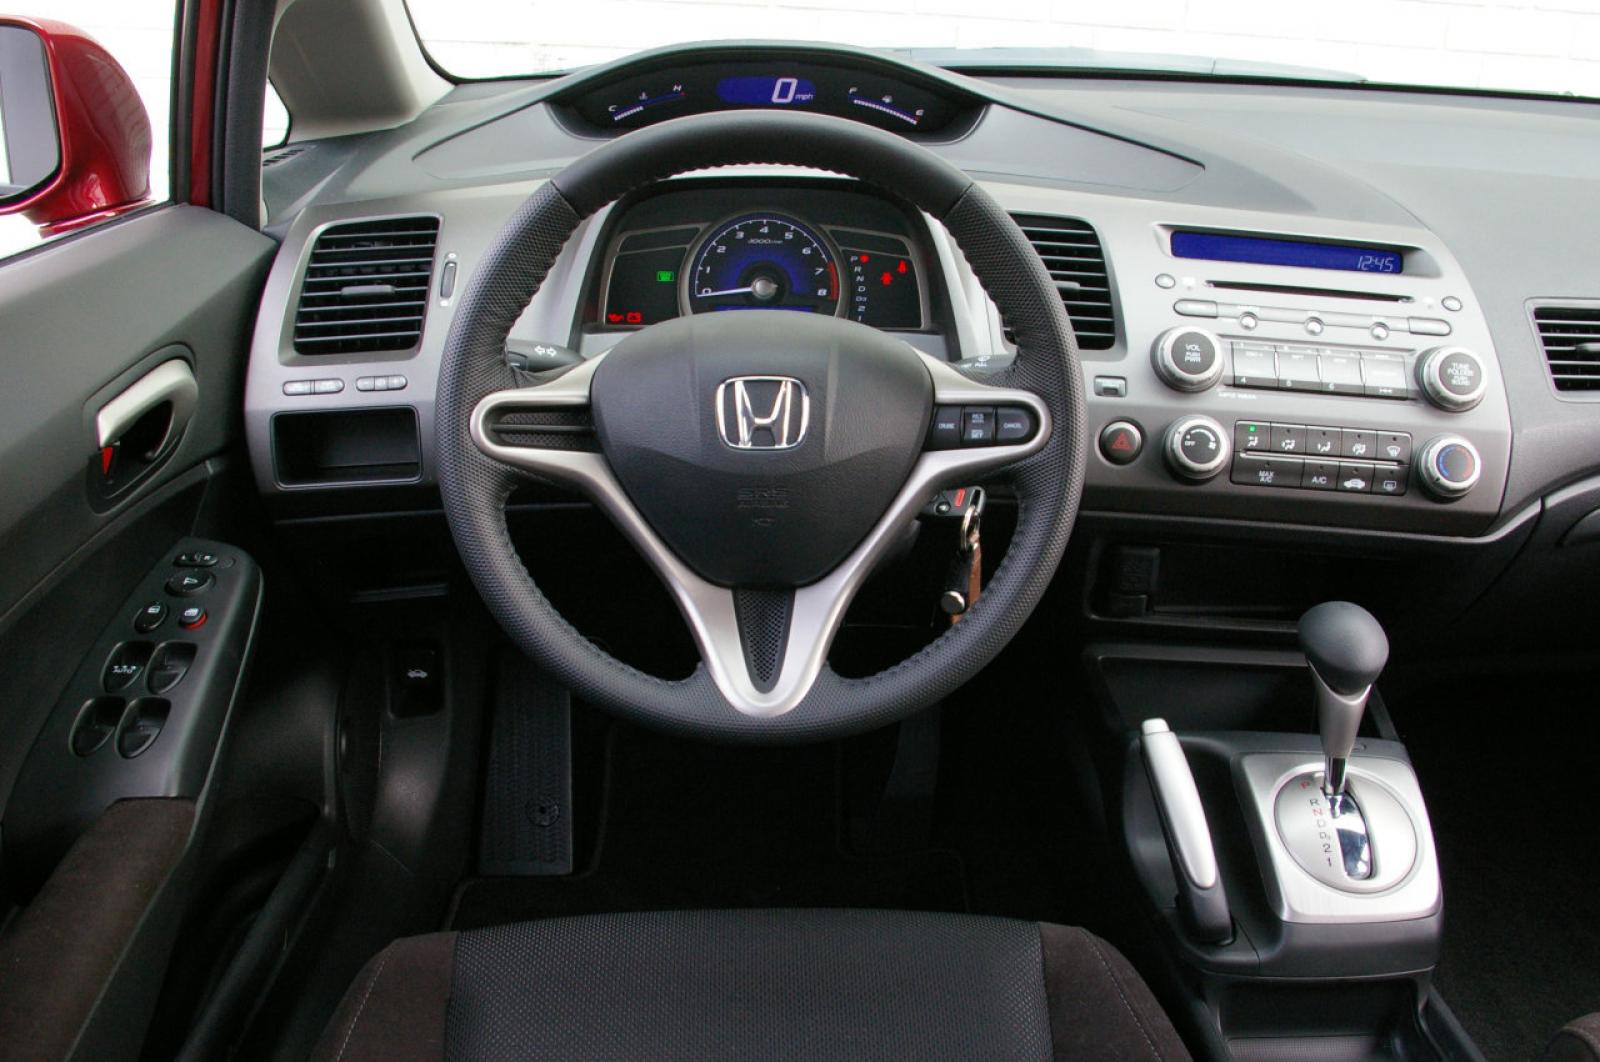 Honda civic автомат. Honda Civic 2008 салон. Honda Civic 8 Interior. Honda Civic 2010 комплектация. Honda Civic 2007 салон.